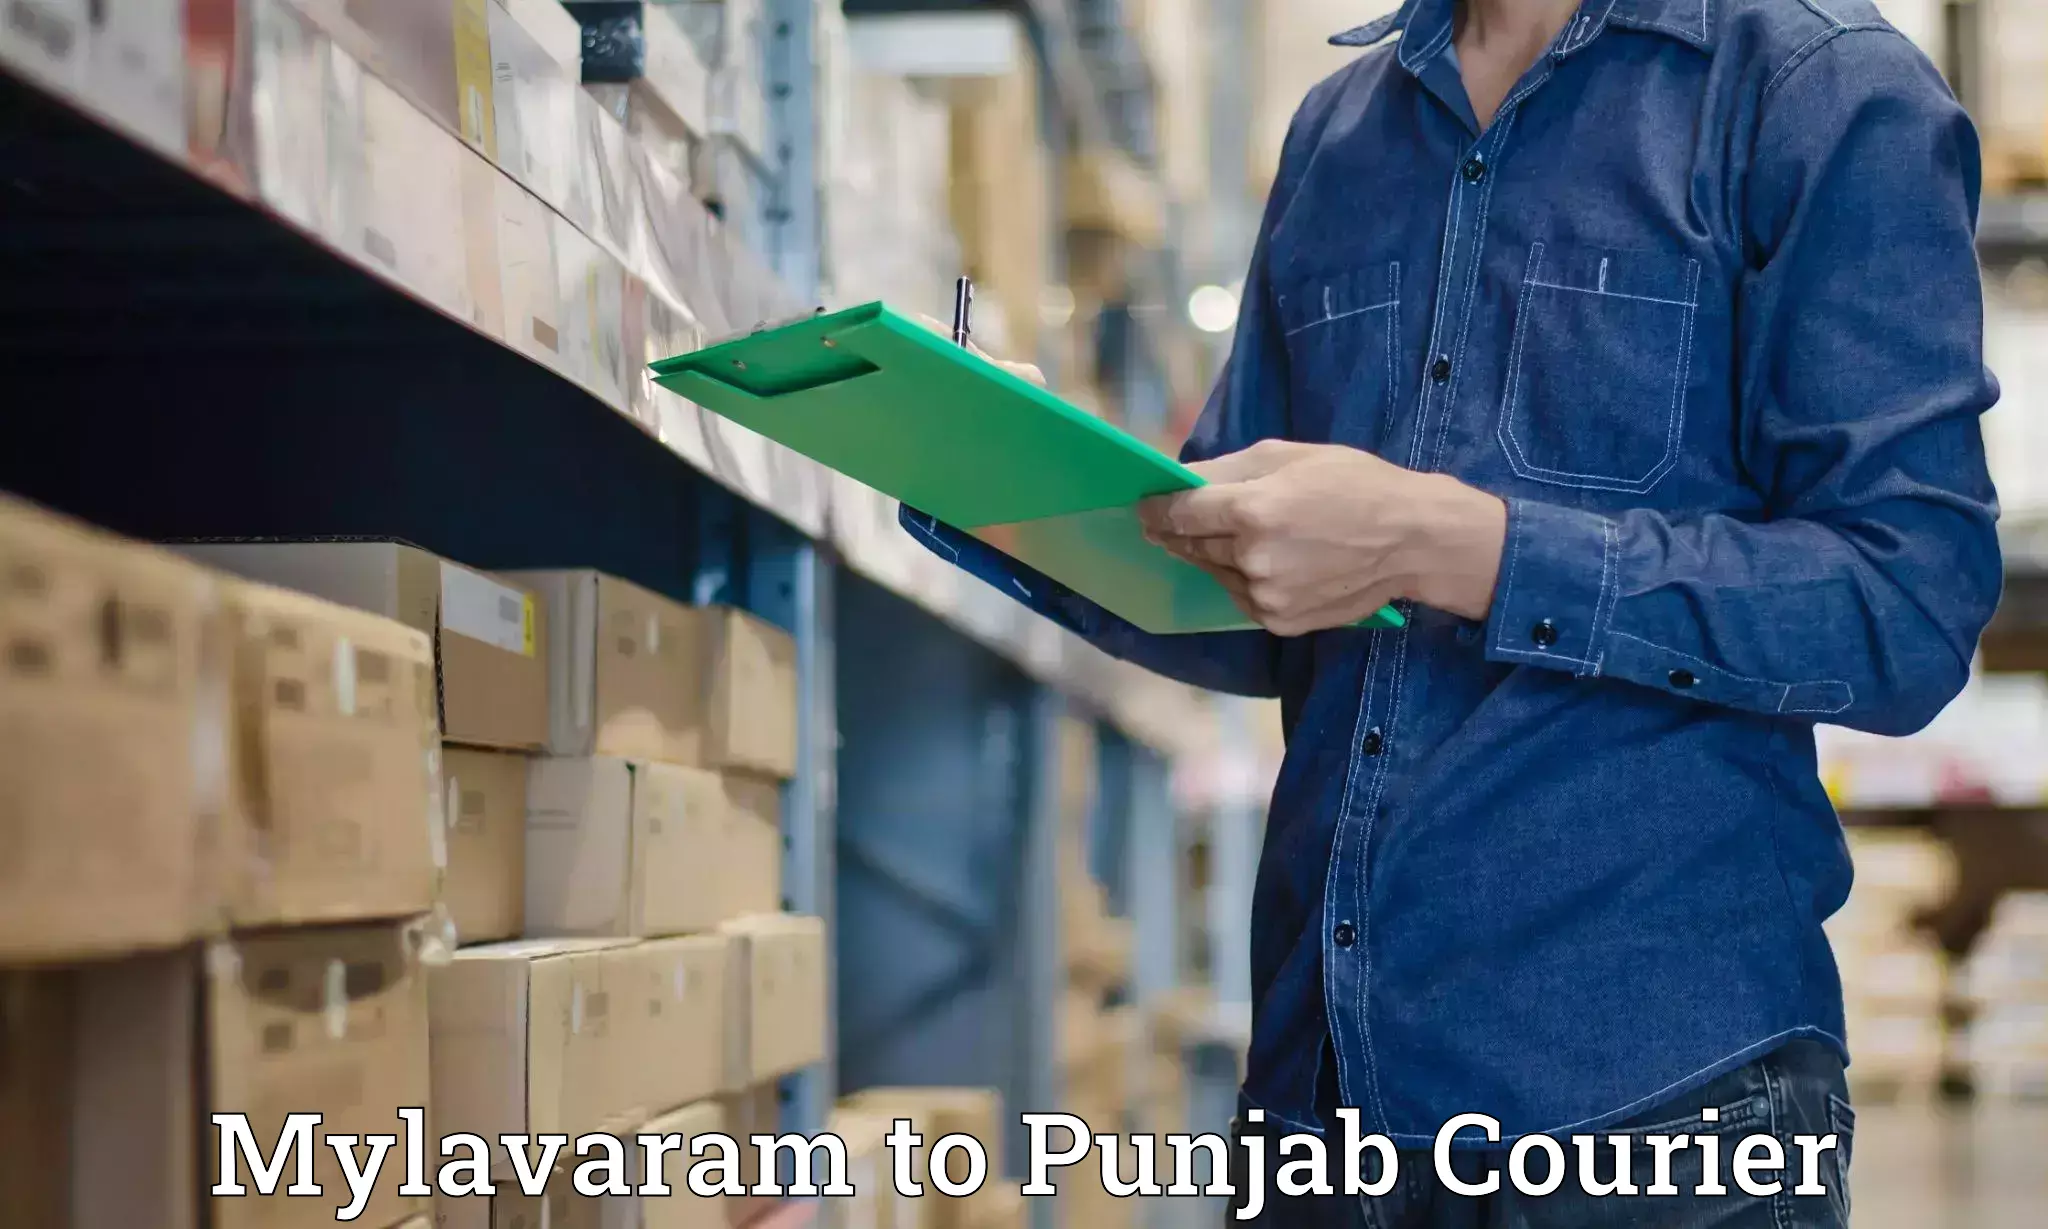 Sustainable shipping practices Mylavaram to Central University of Punjab Bathinda